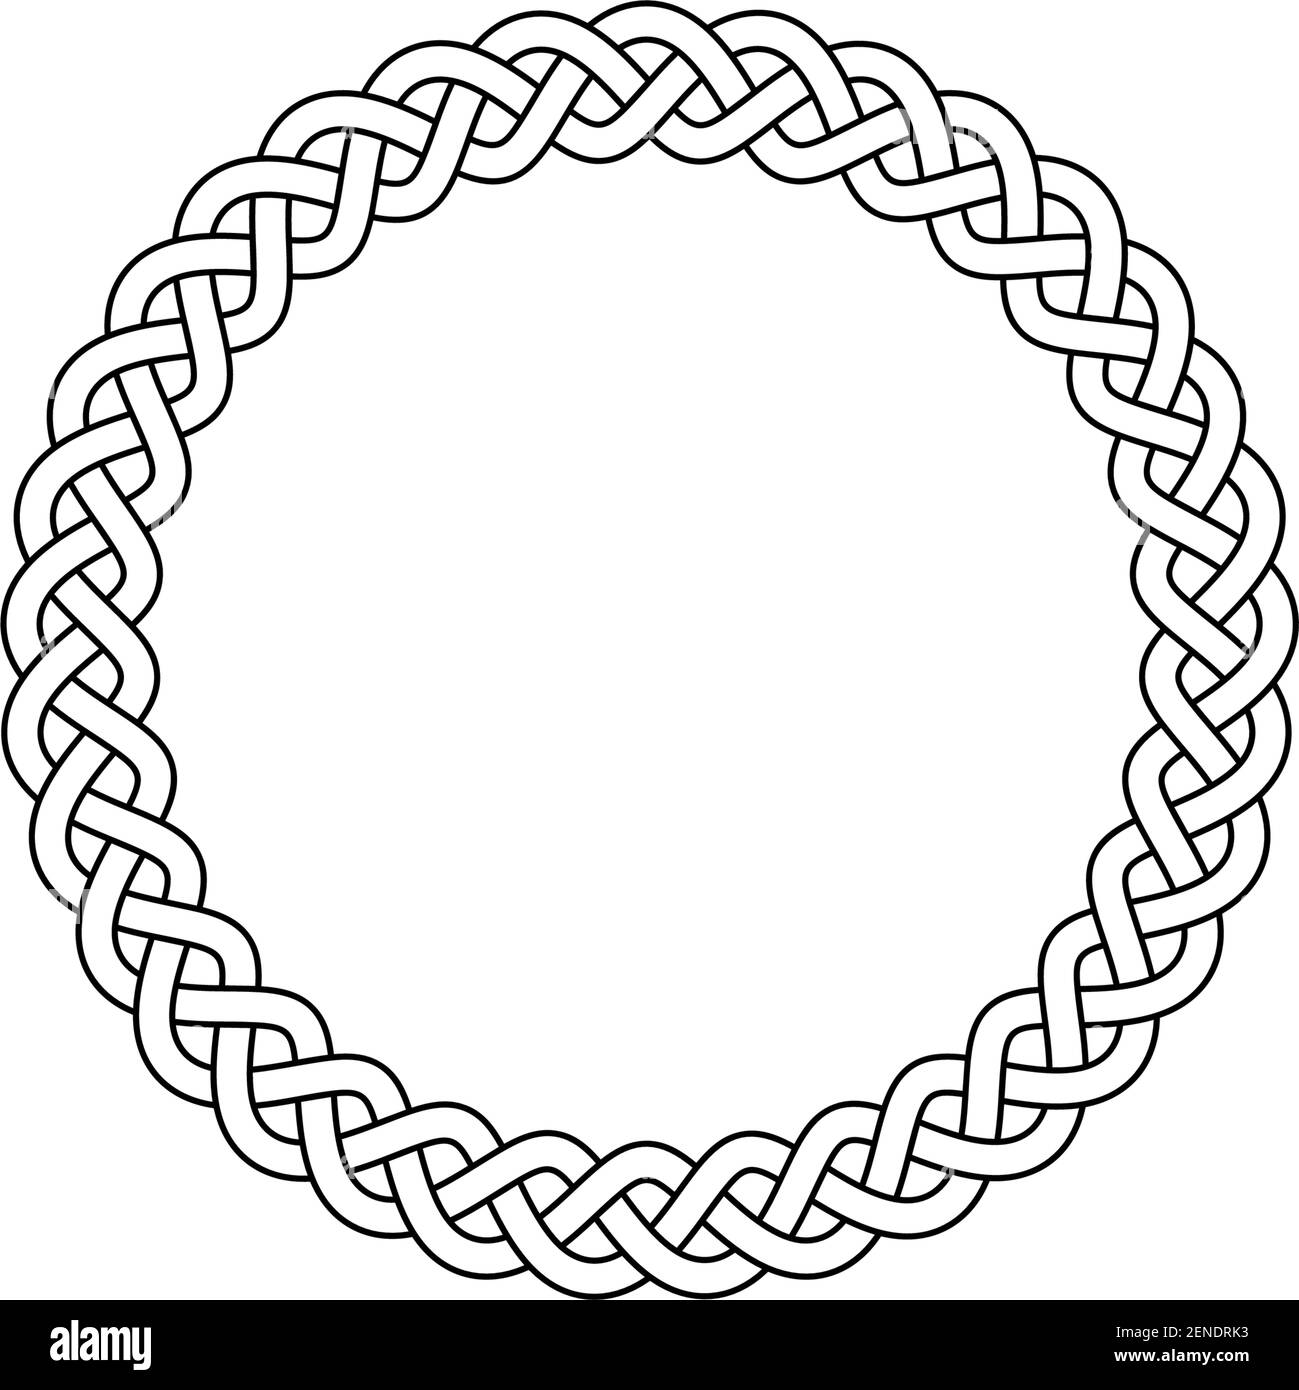 Anneau avec nœud celtique en noir sur un fond blanc isolé. Illustration abstraite d'un symbole celtique. Illustration de Vecteur